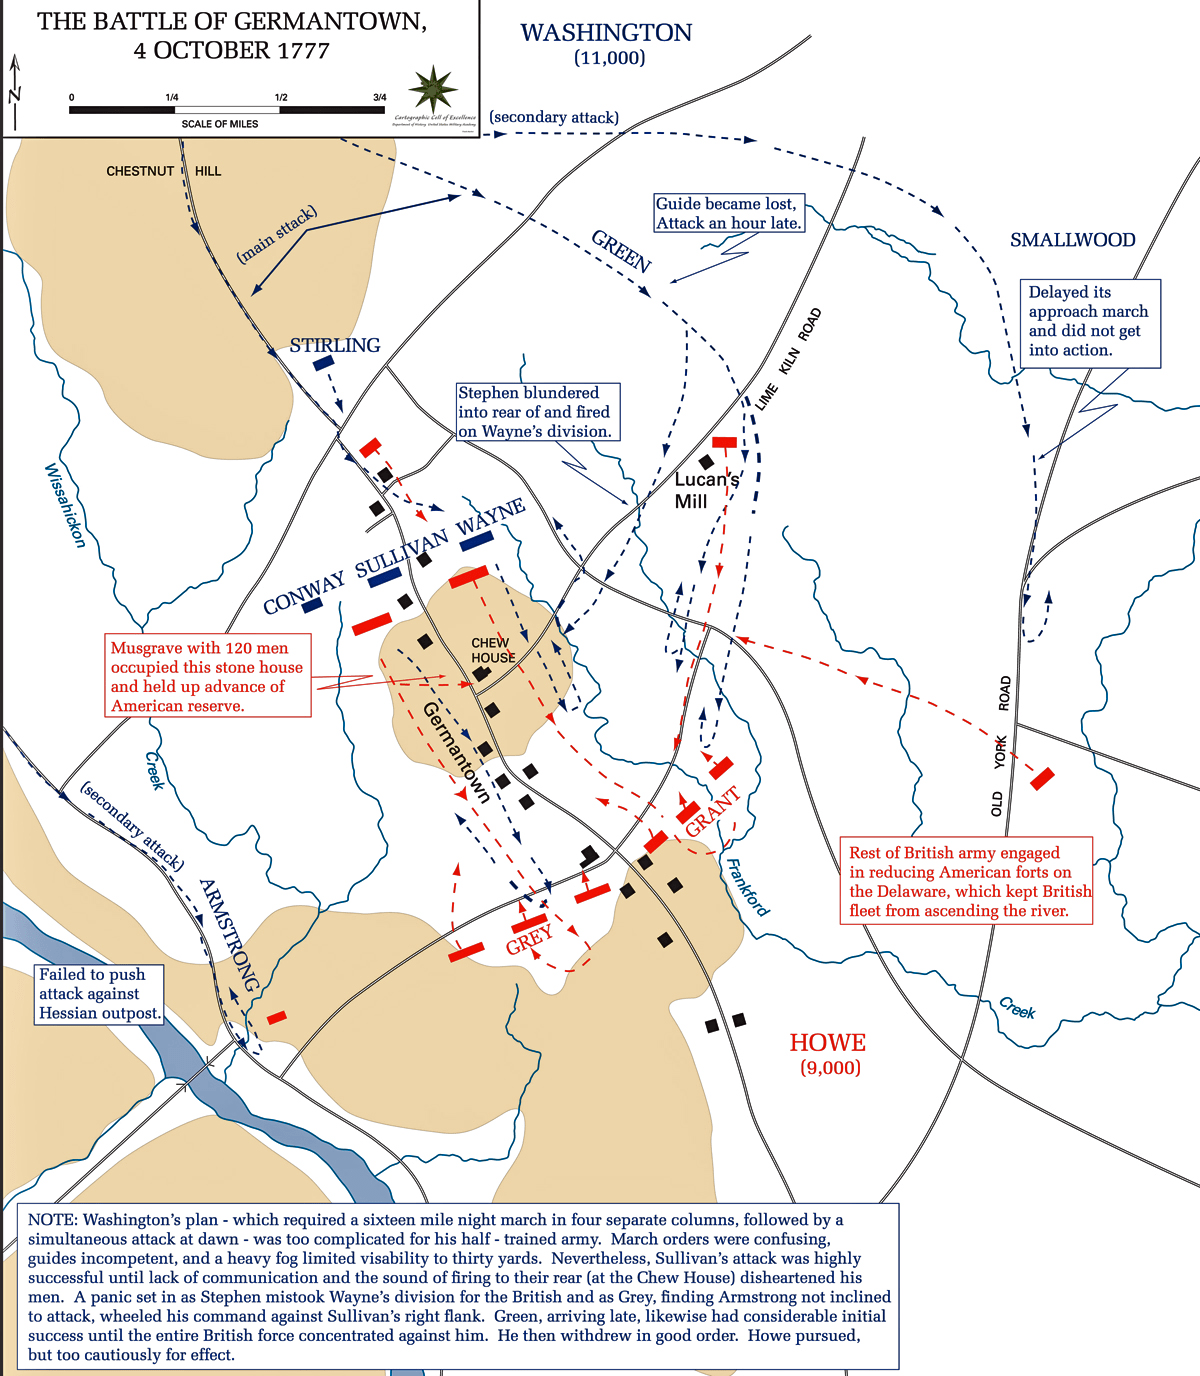 batalla-de-germantown-4-de-octubre-de-1777--despliegue-de-fuerzas.png